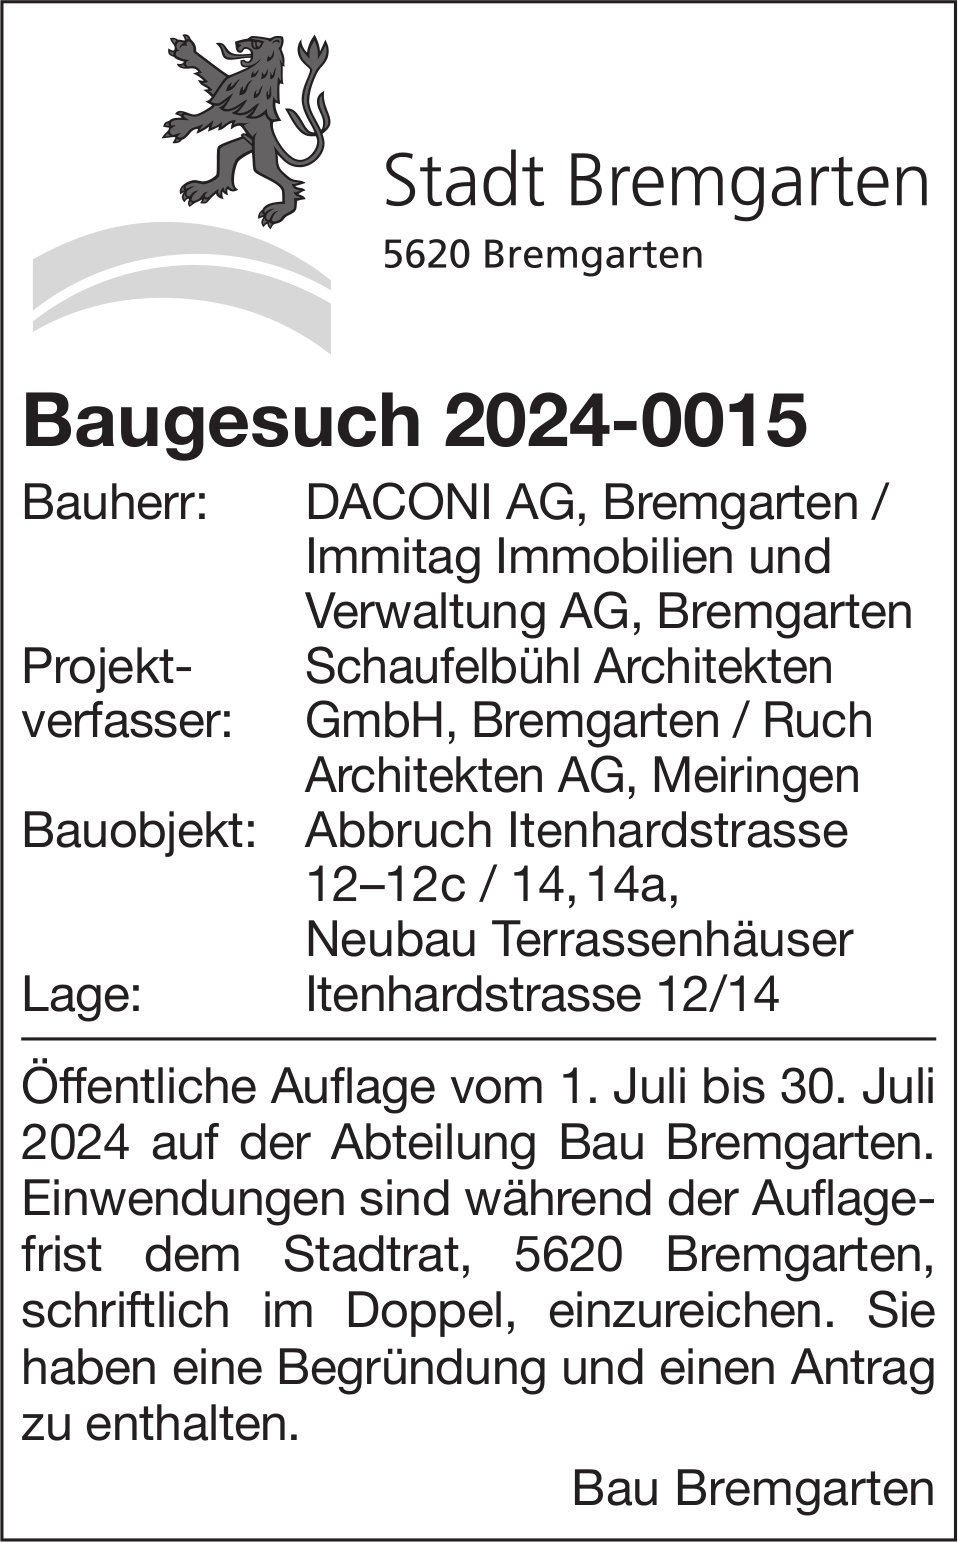 Baugesuche, Bremgarten - DACONI AG